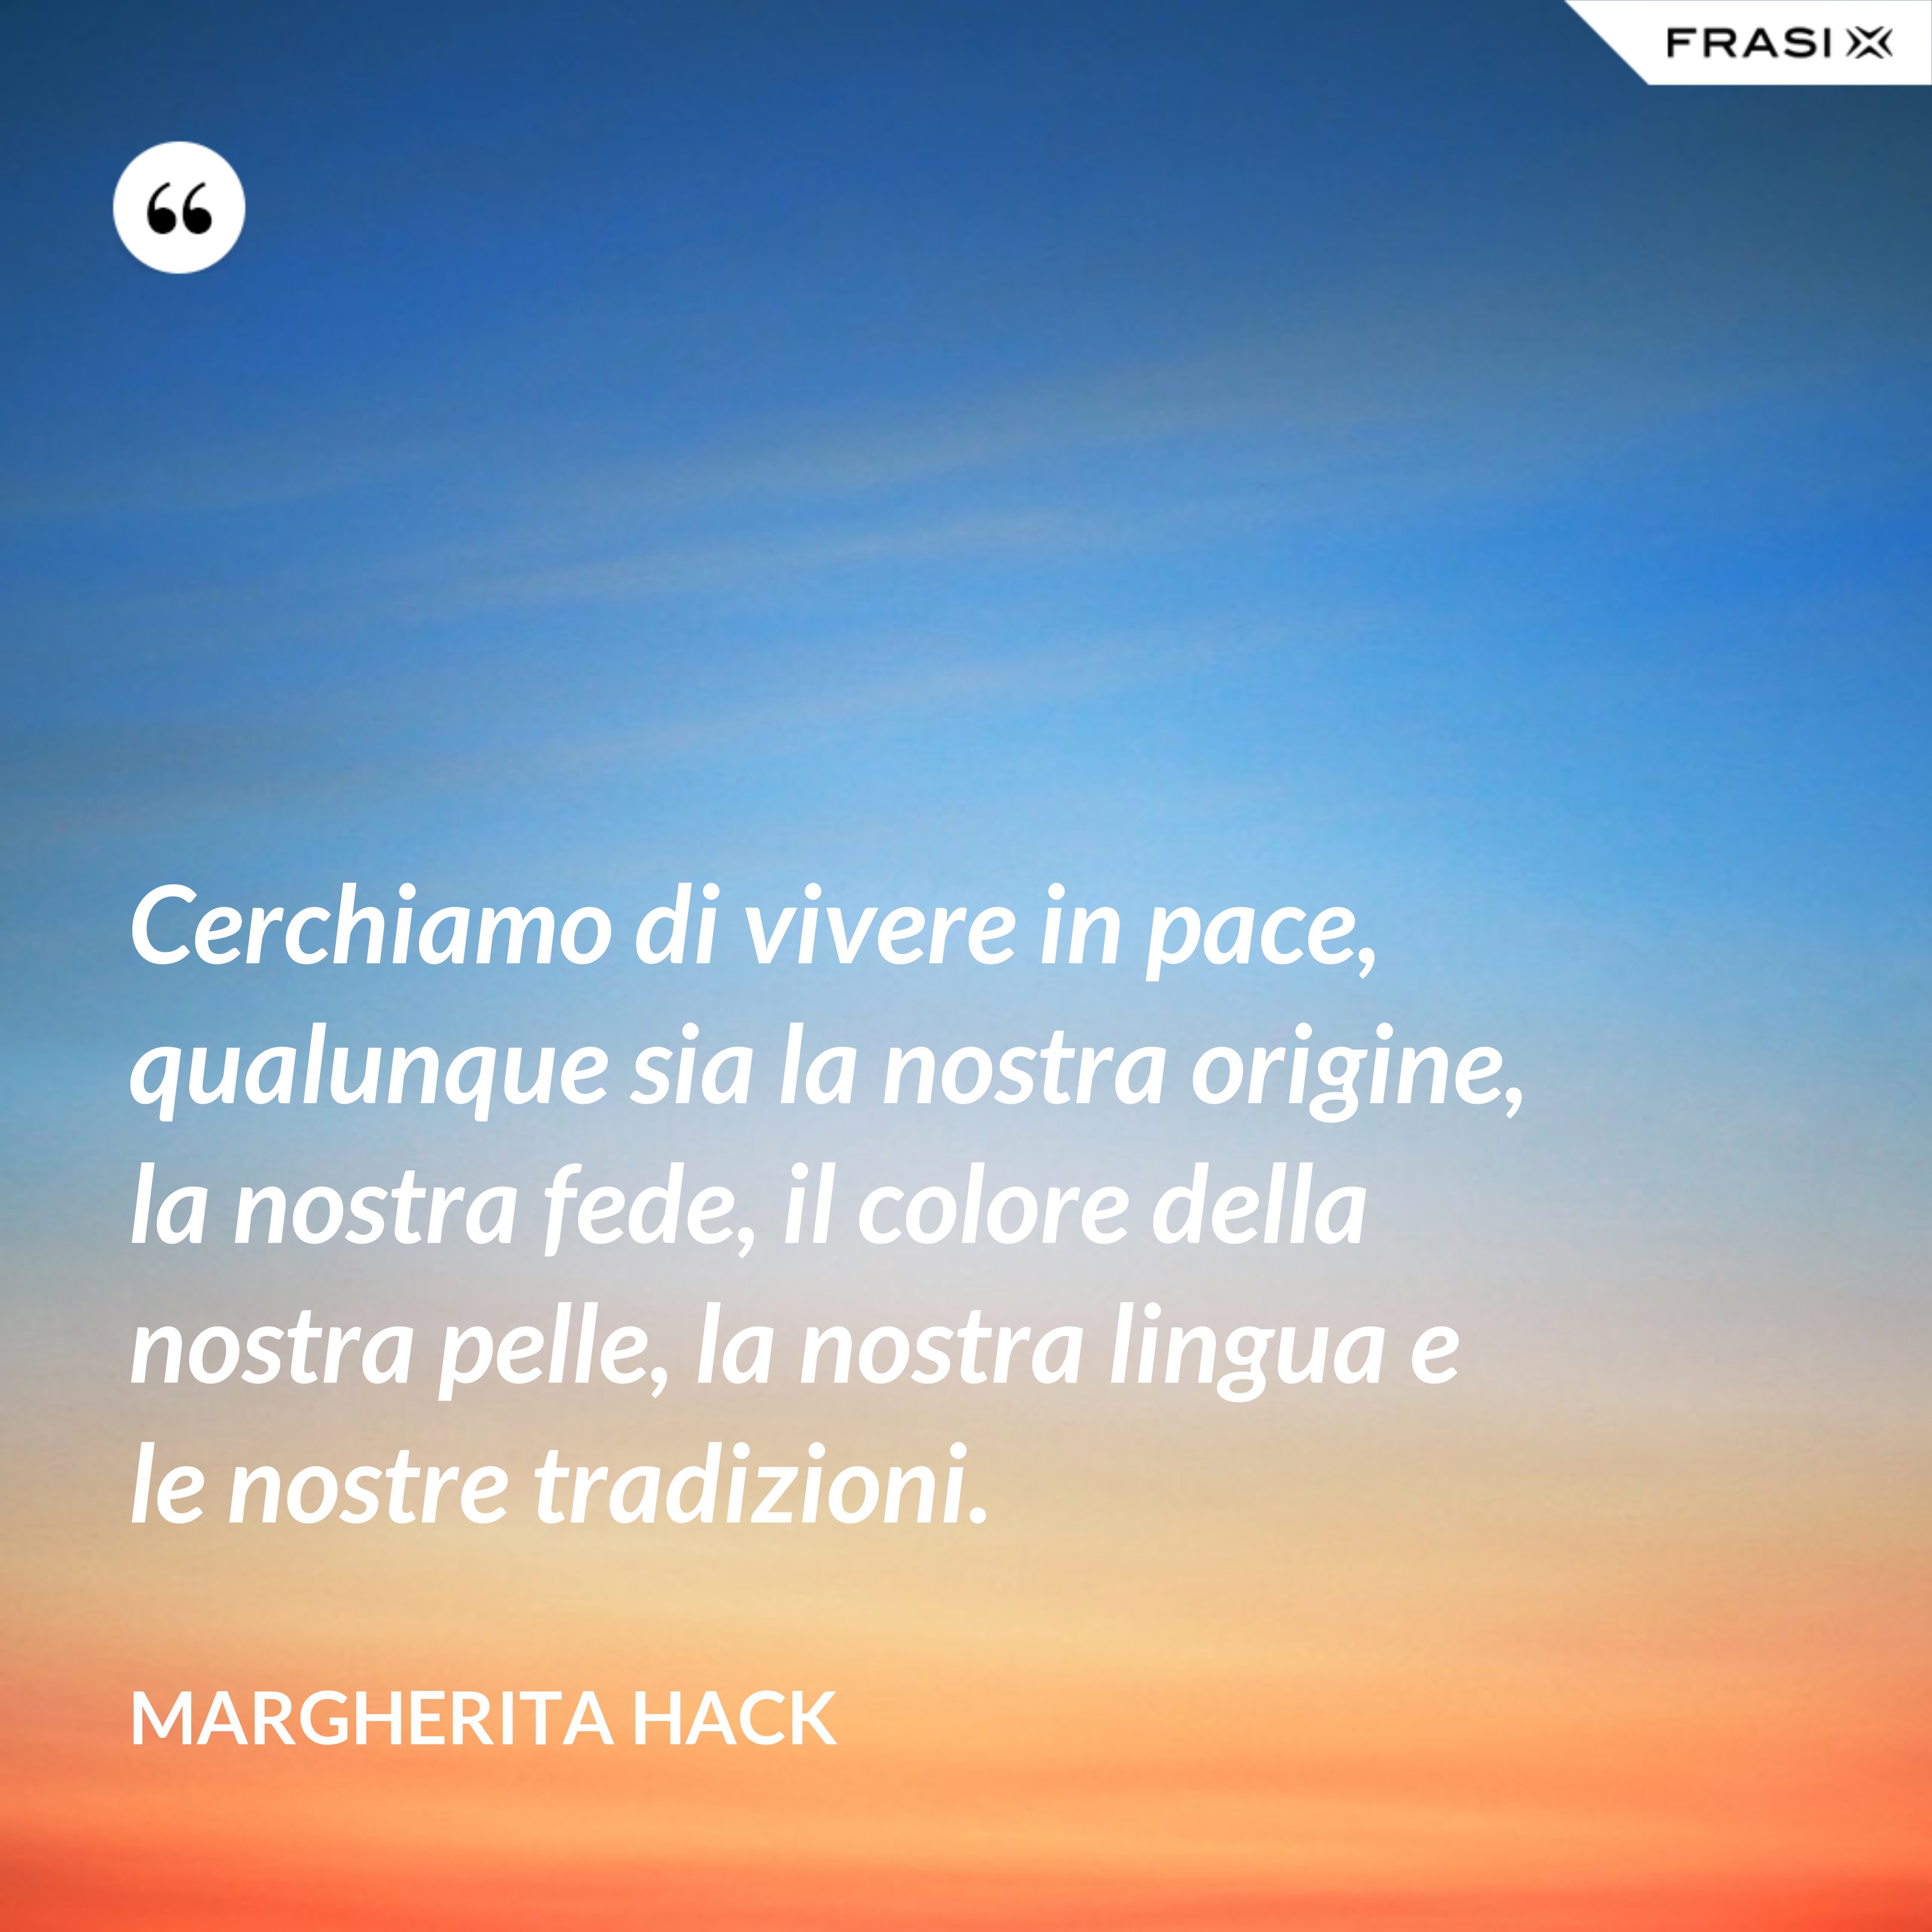 Cerchiamo di vivere in pace, qualunque sia la nostra origine, la nostra fede, il colore della nostra pelle, la nostra lingua e le nostre tradizioni. - Margherita Hack